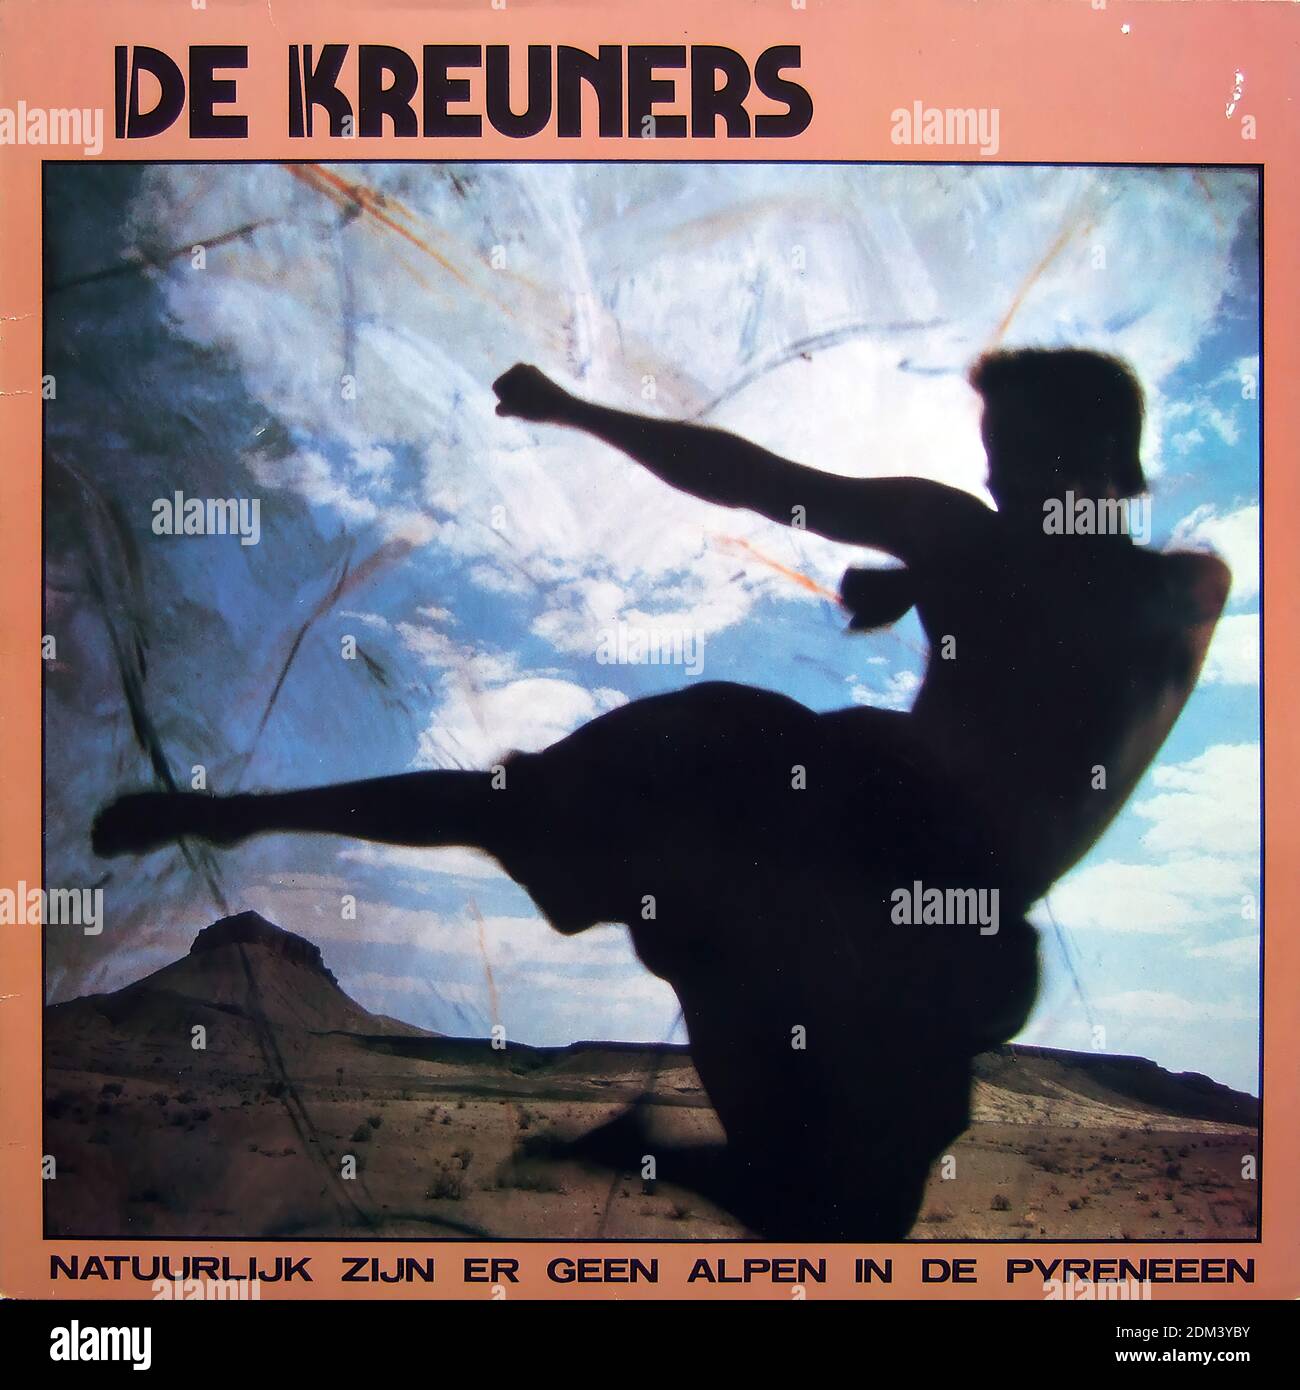 De Kreuners - Natuurlijk zijn er geen Alpen in de Pyreneeen - Vintage vinyl album cover Stock Photo